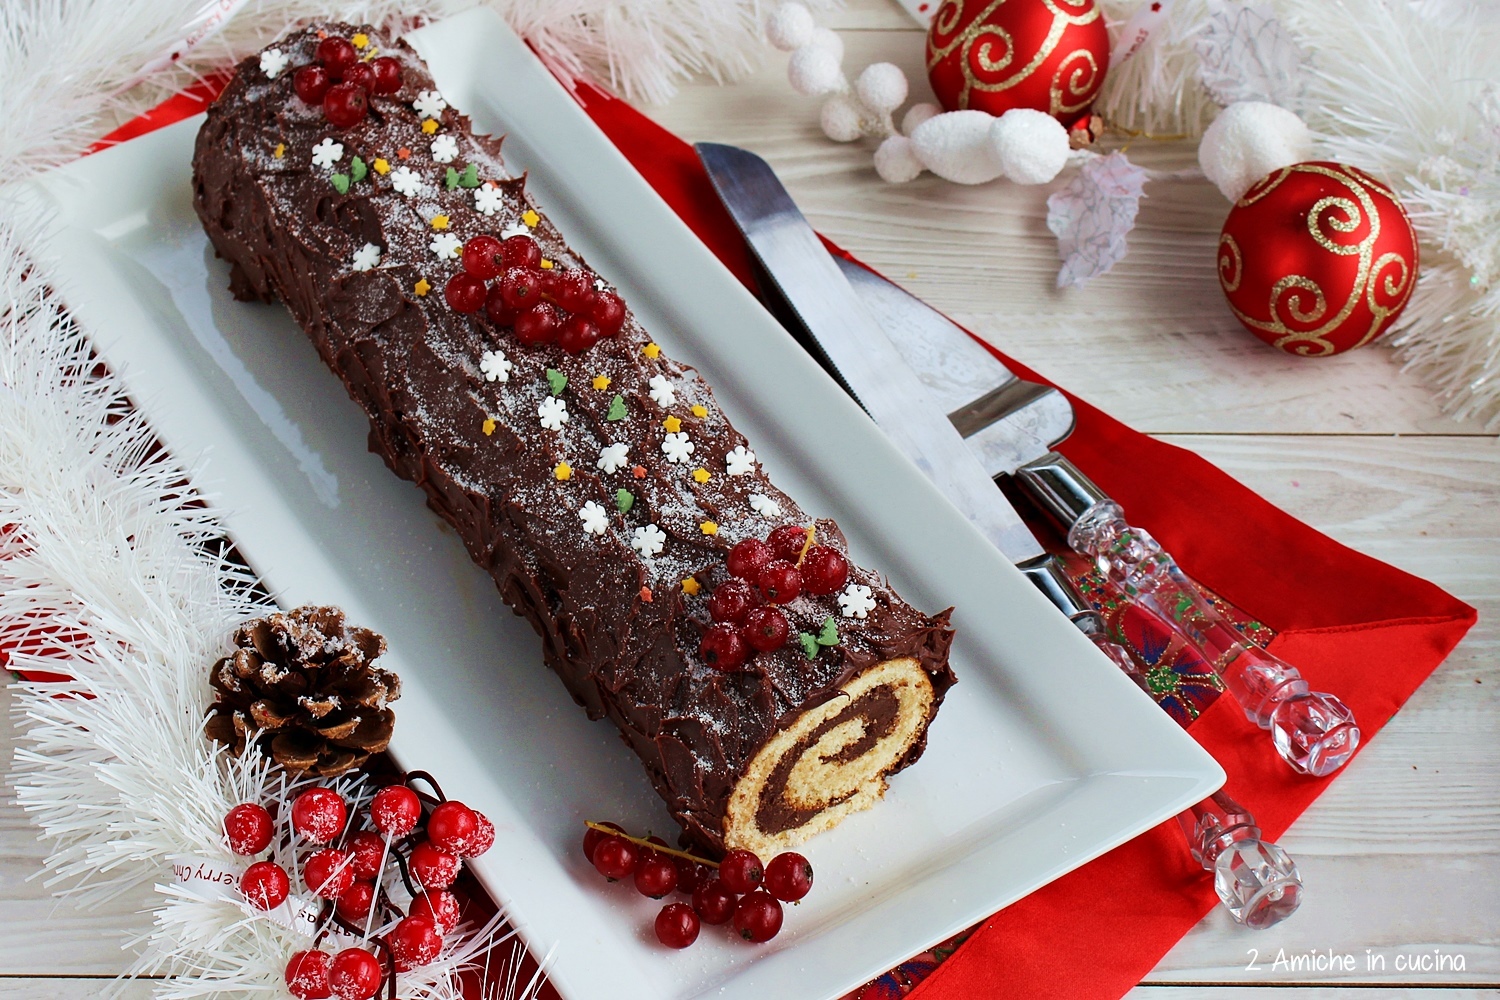 Tronchetto Di Natale Per 20 Persone.Tronchetto Al Cioccolato Buche De Noel 2 Amiche In Cucina